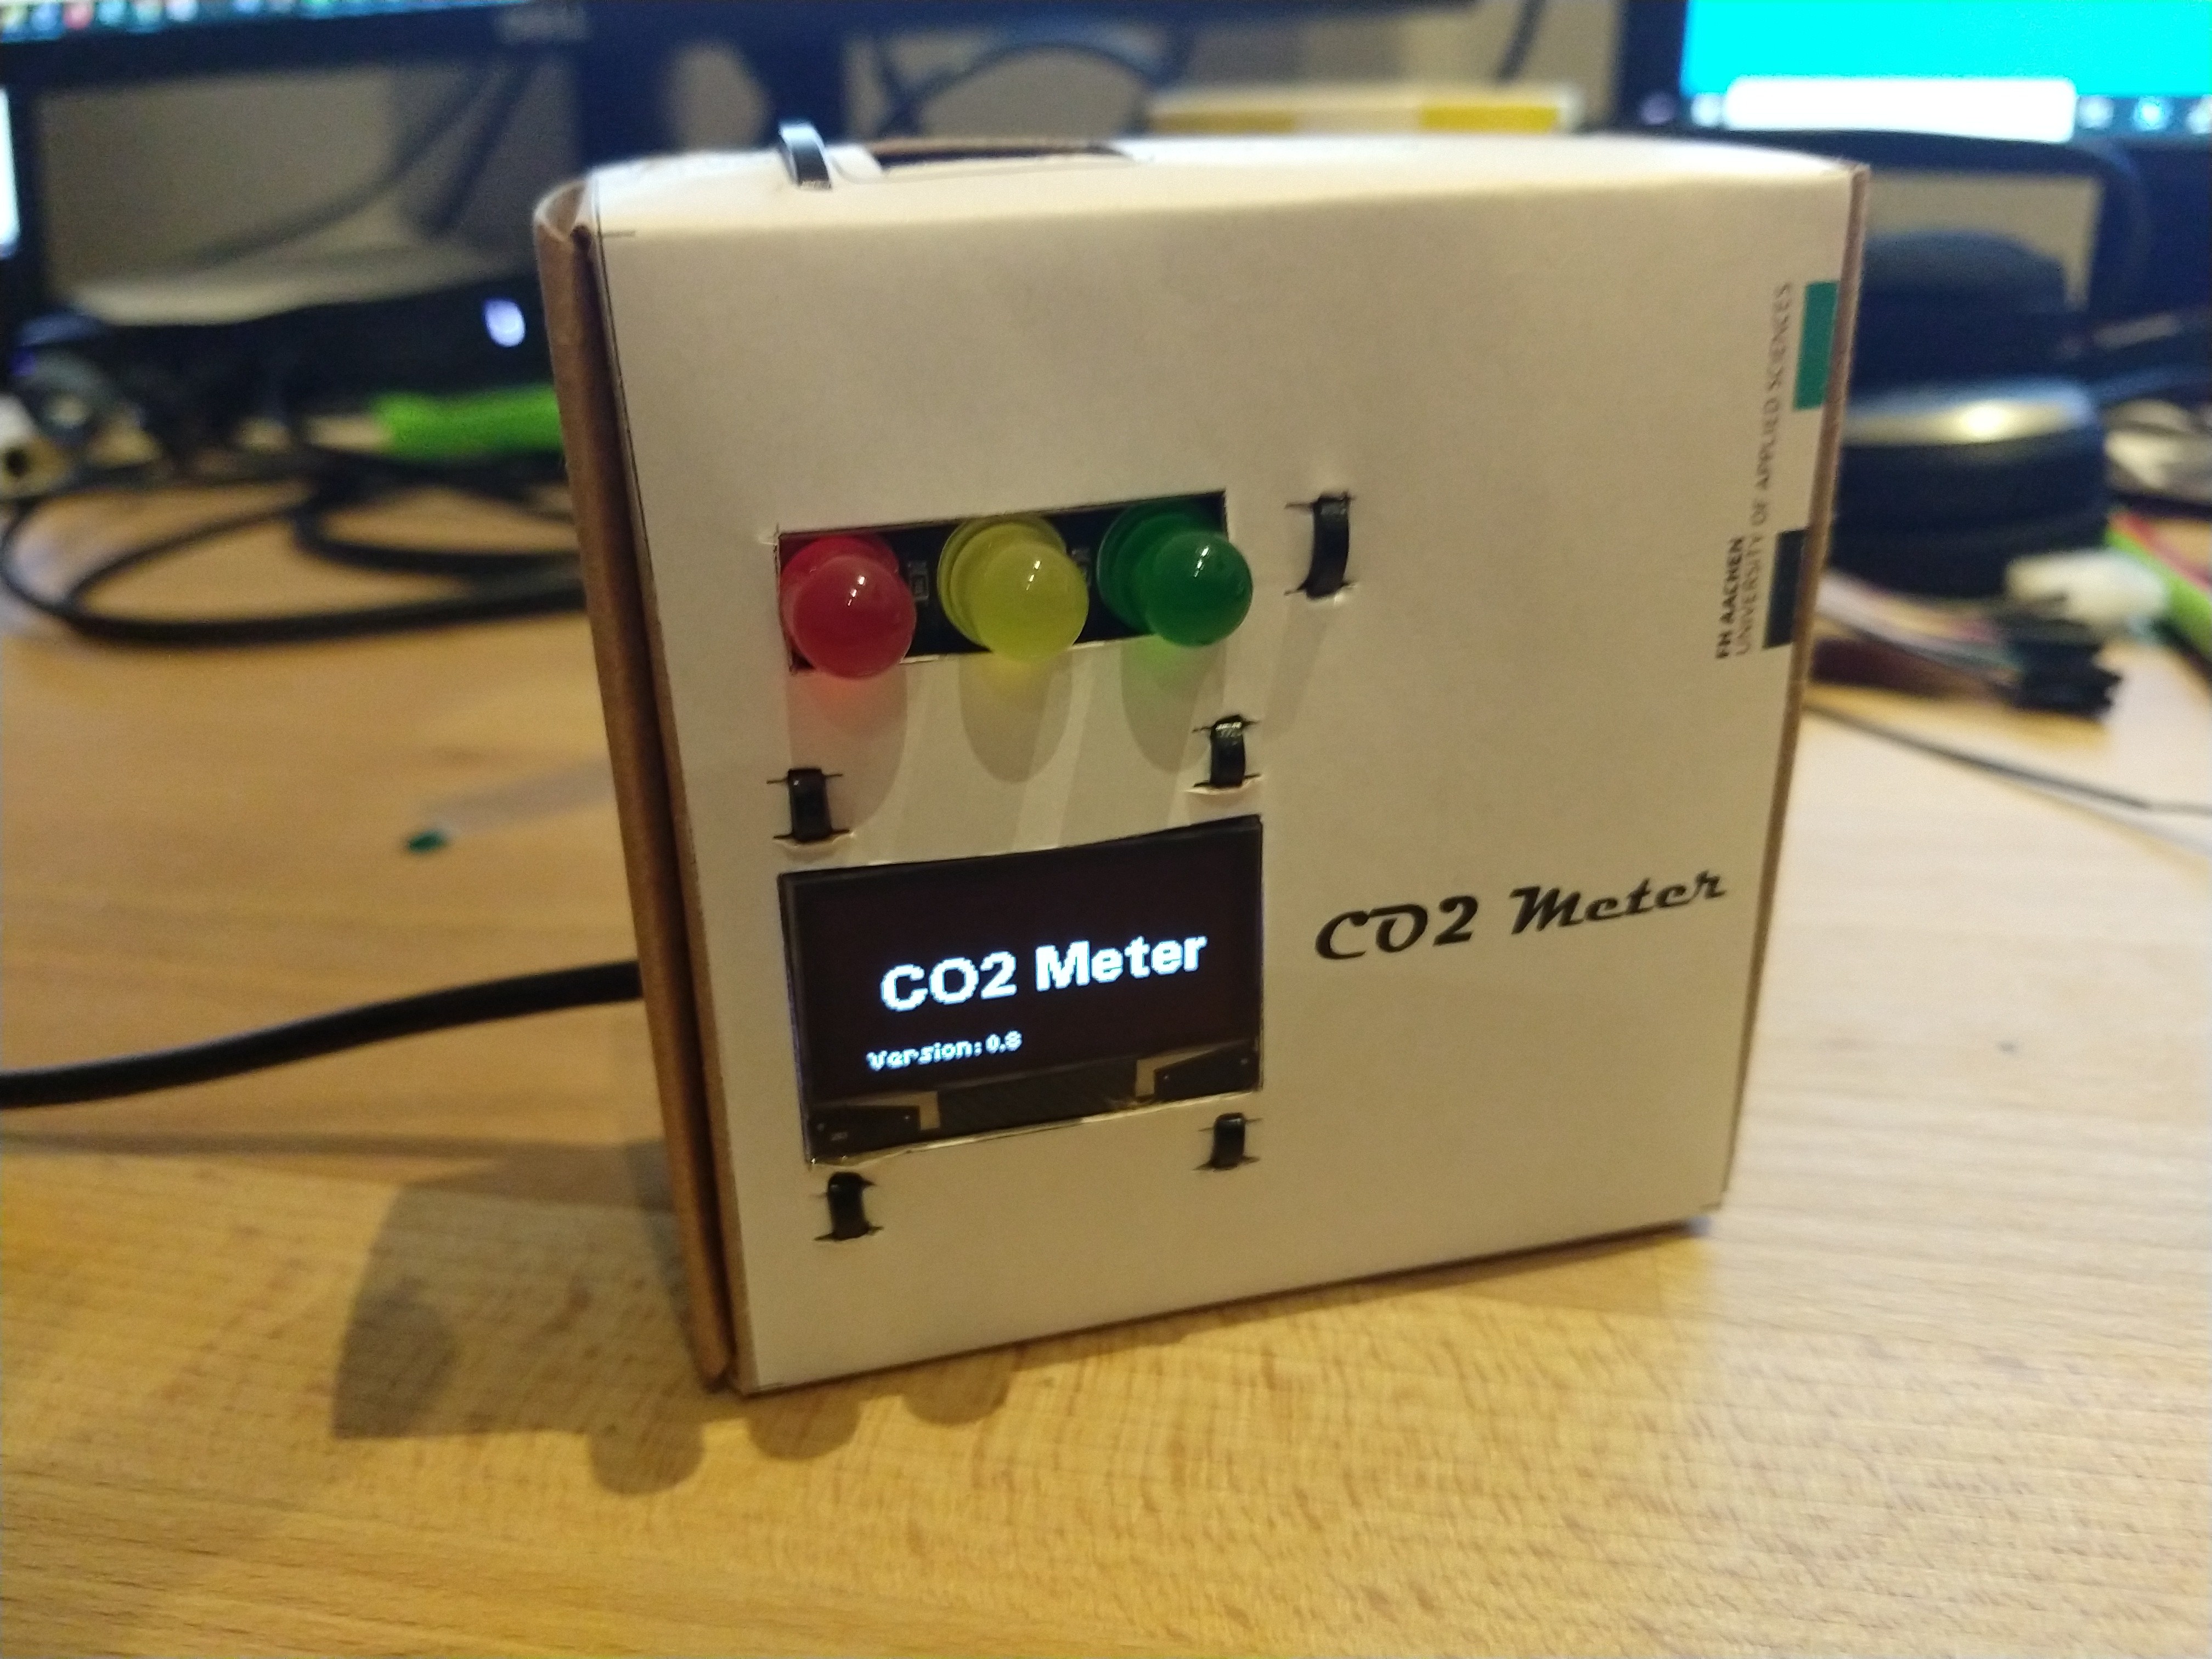 CO2-Messgerät-Set fürs Klassenzimmer